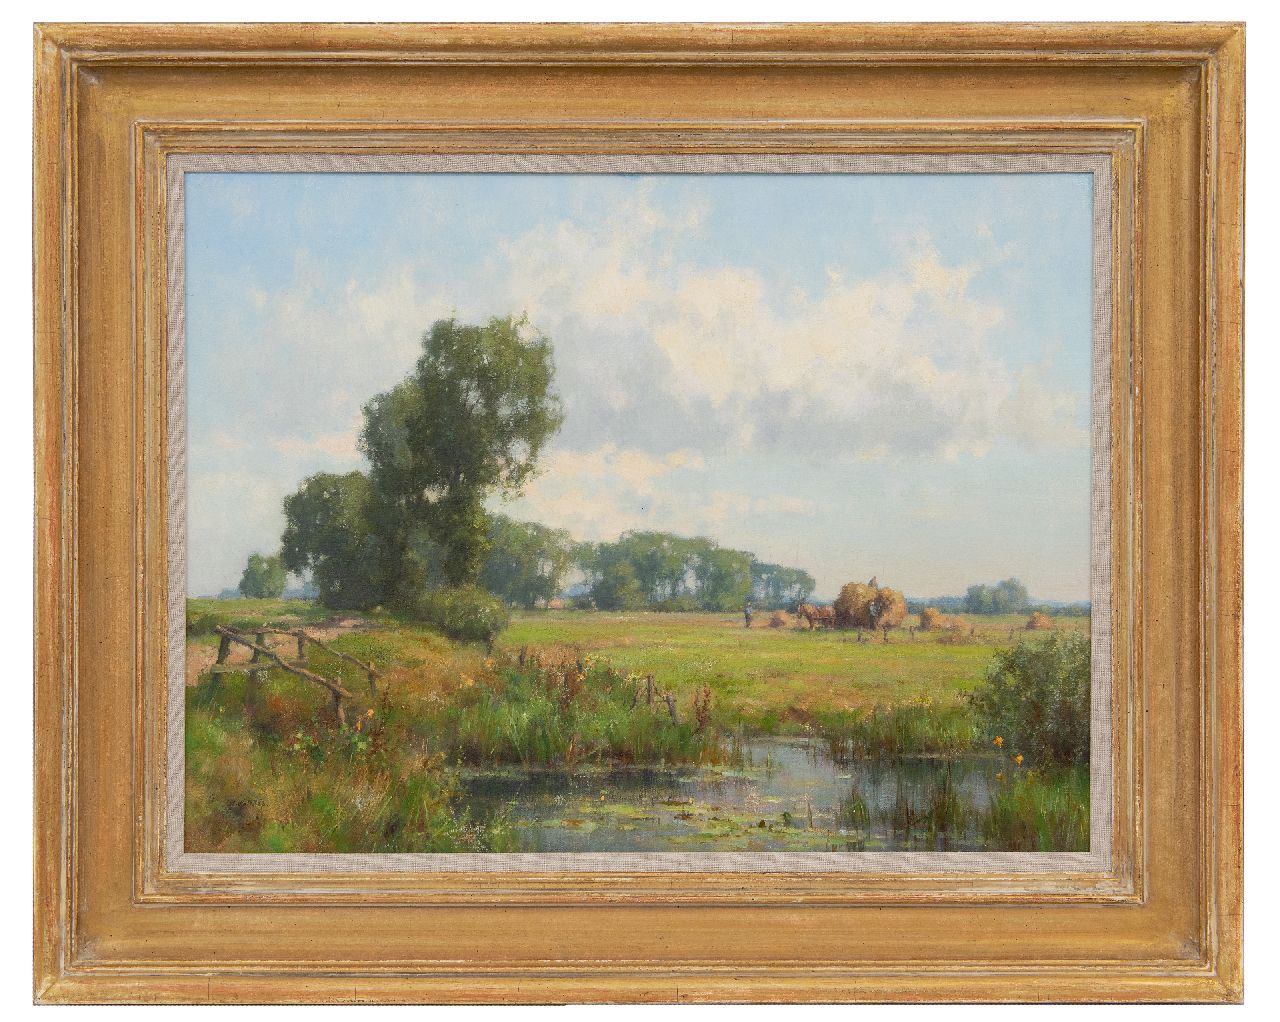 Holtrup J.  | Jan Holtrup | Schilderijen te koop aangeboden | Hooioogst in de Gelderse Waard, olieverf op doek 45,0 x 60,1 cm, gesigneerd linksonder